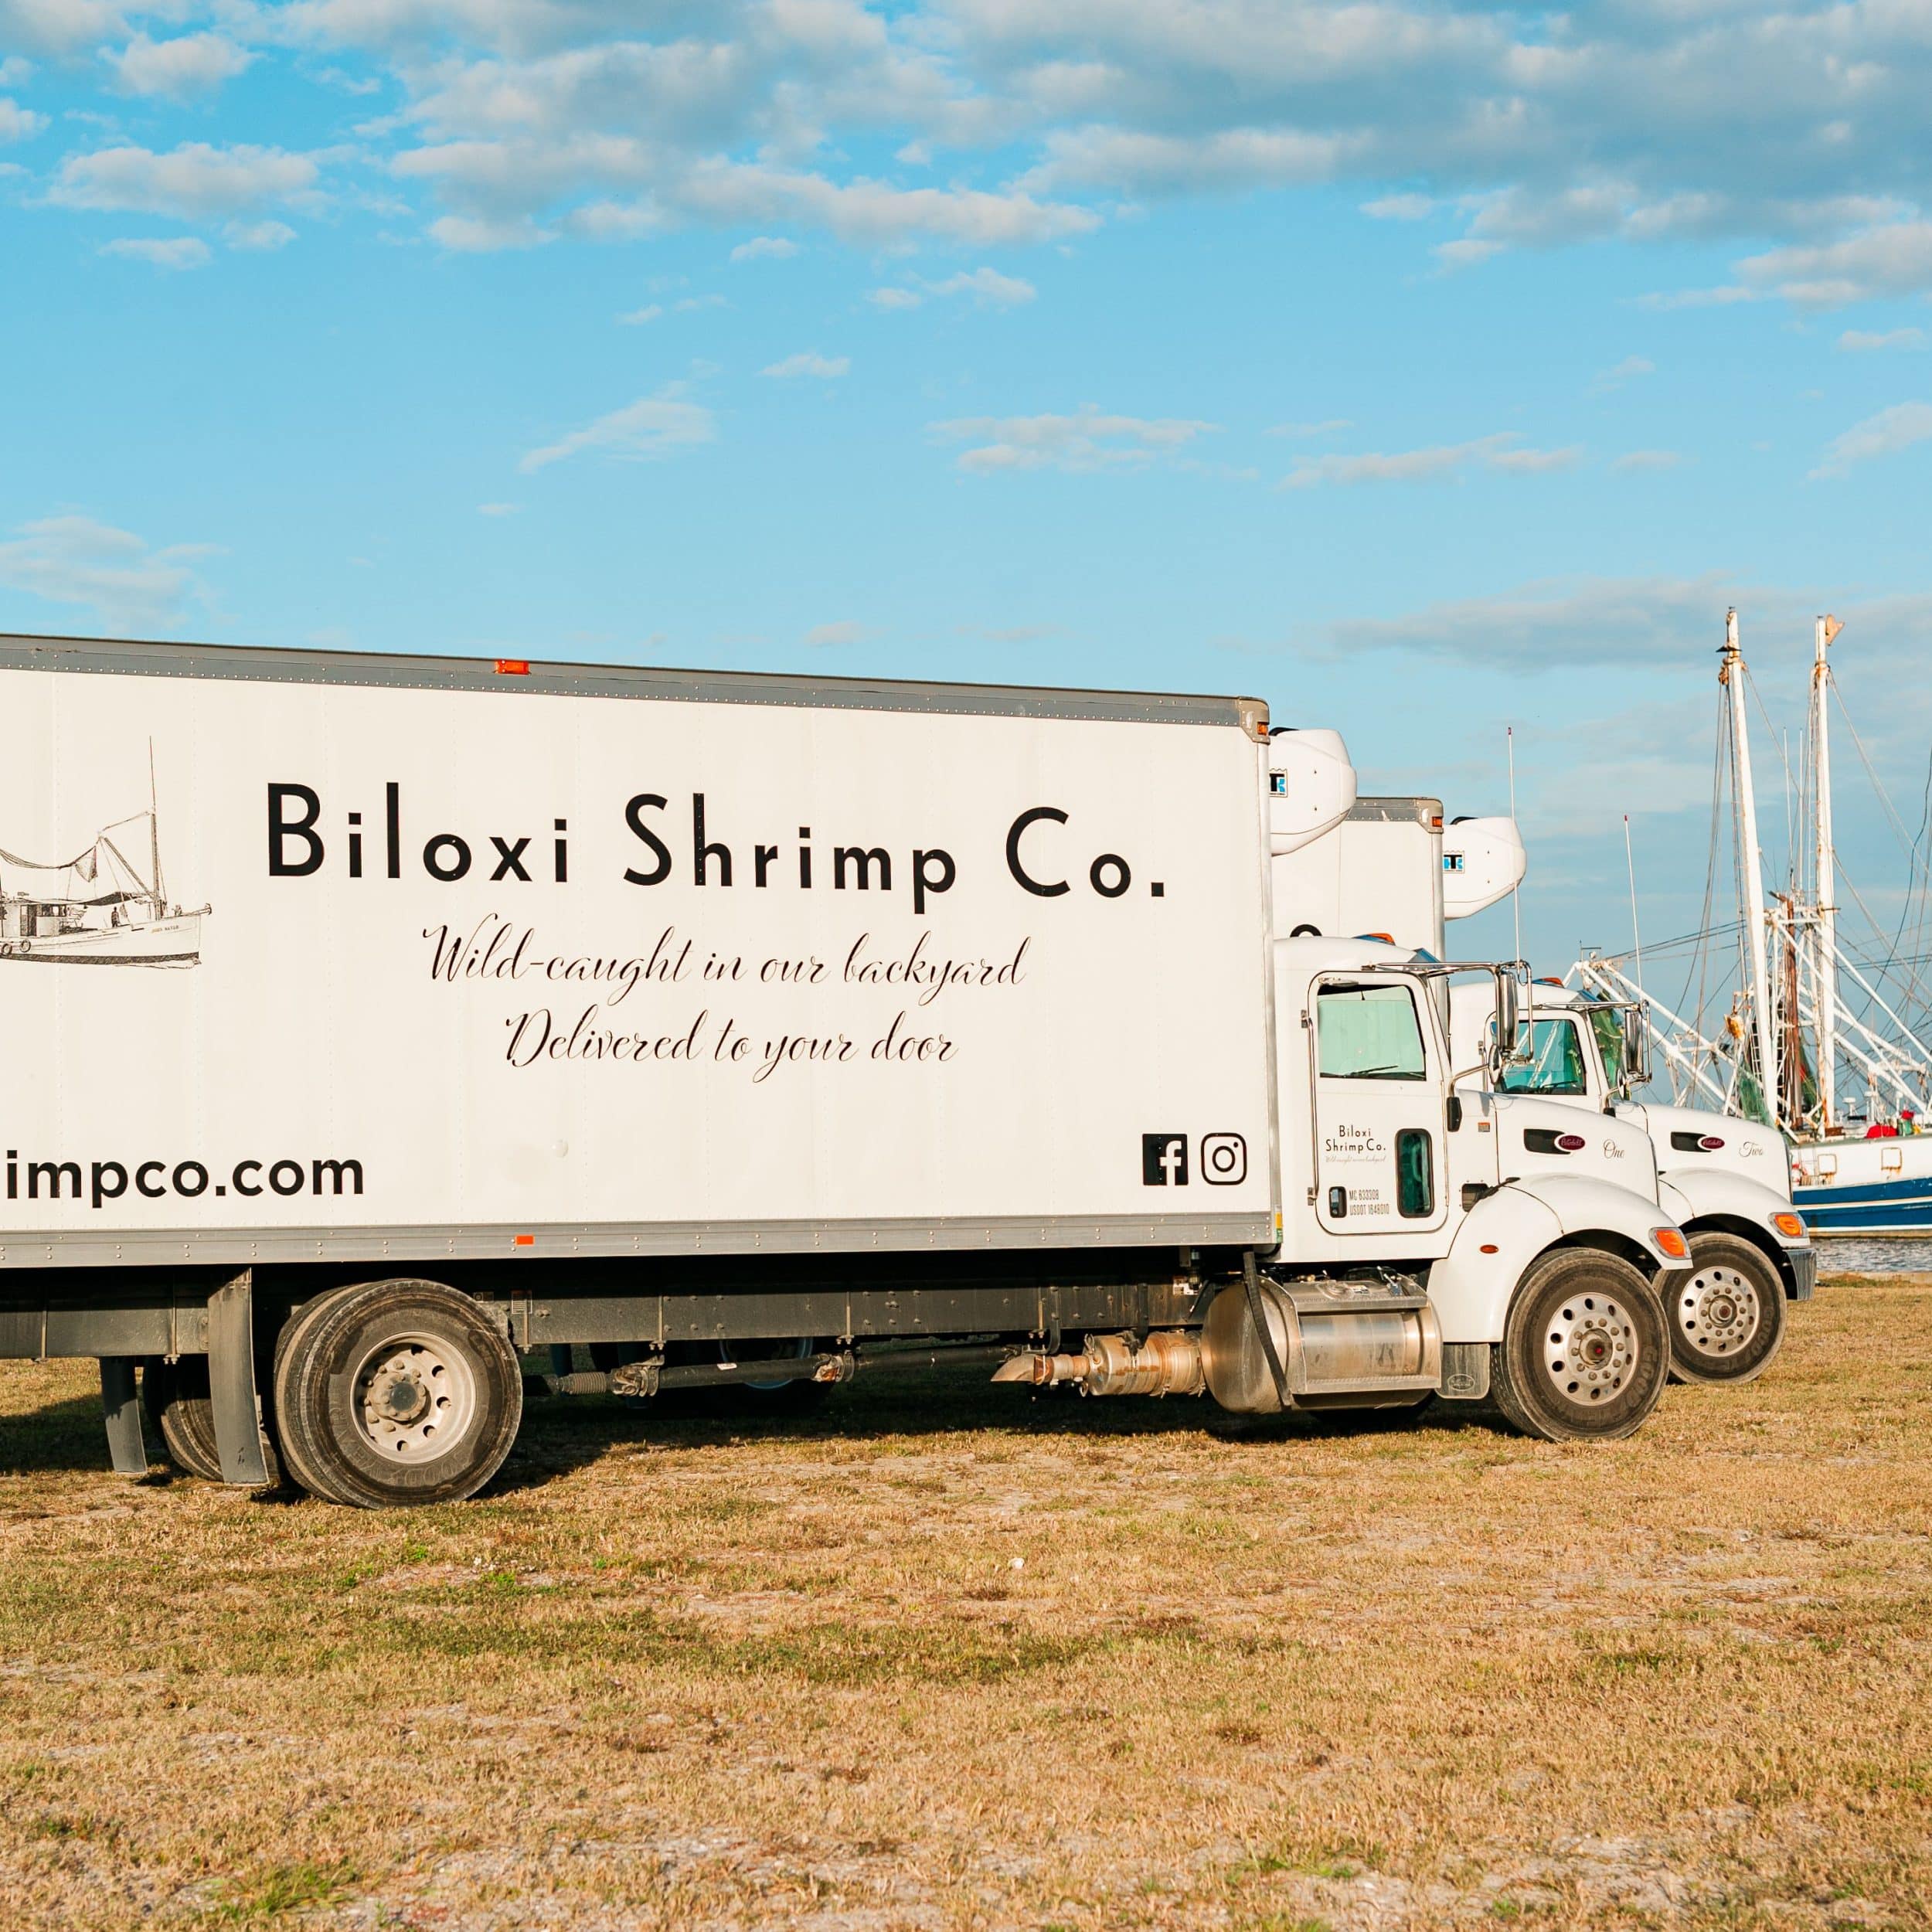 biloxi shrimp company